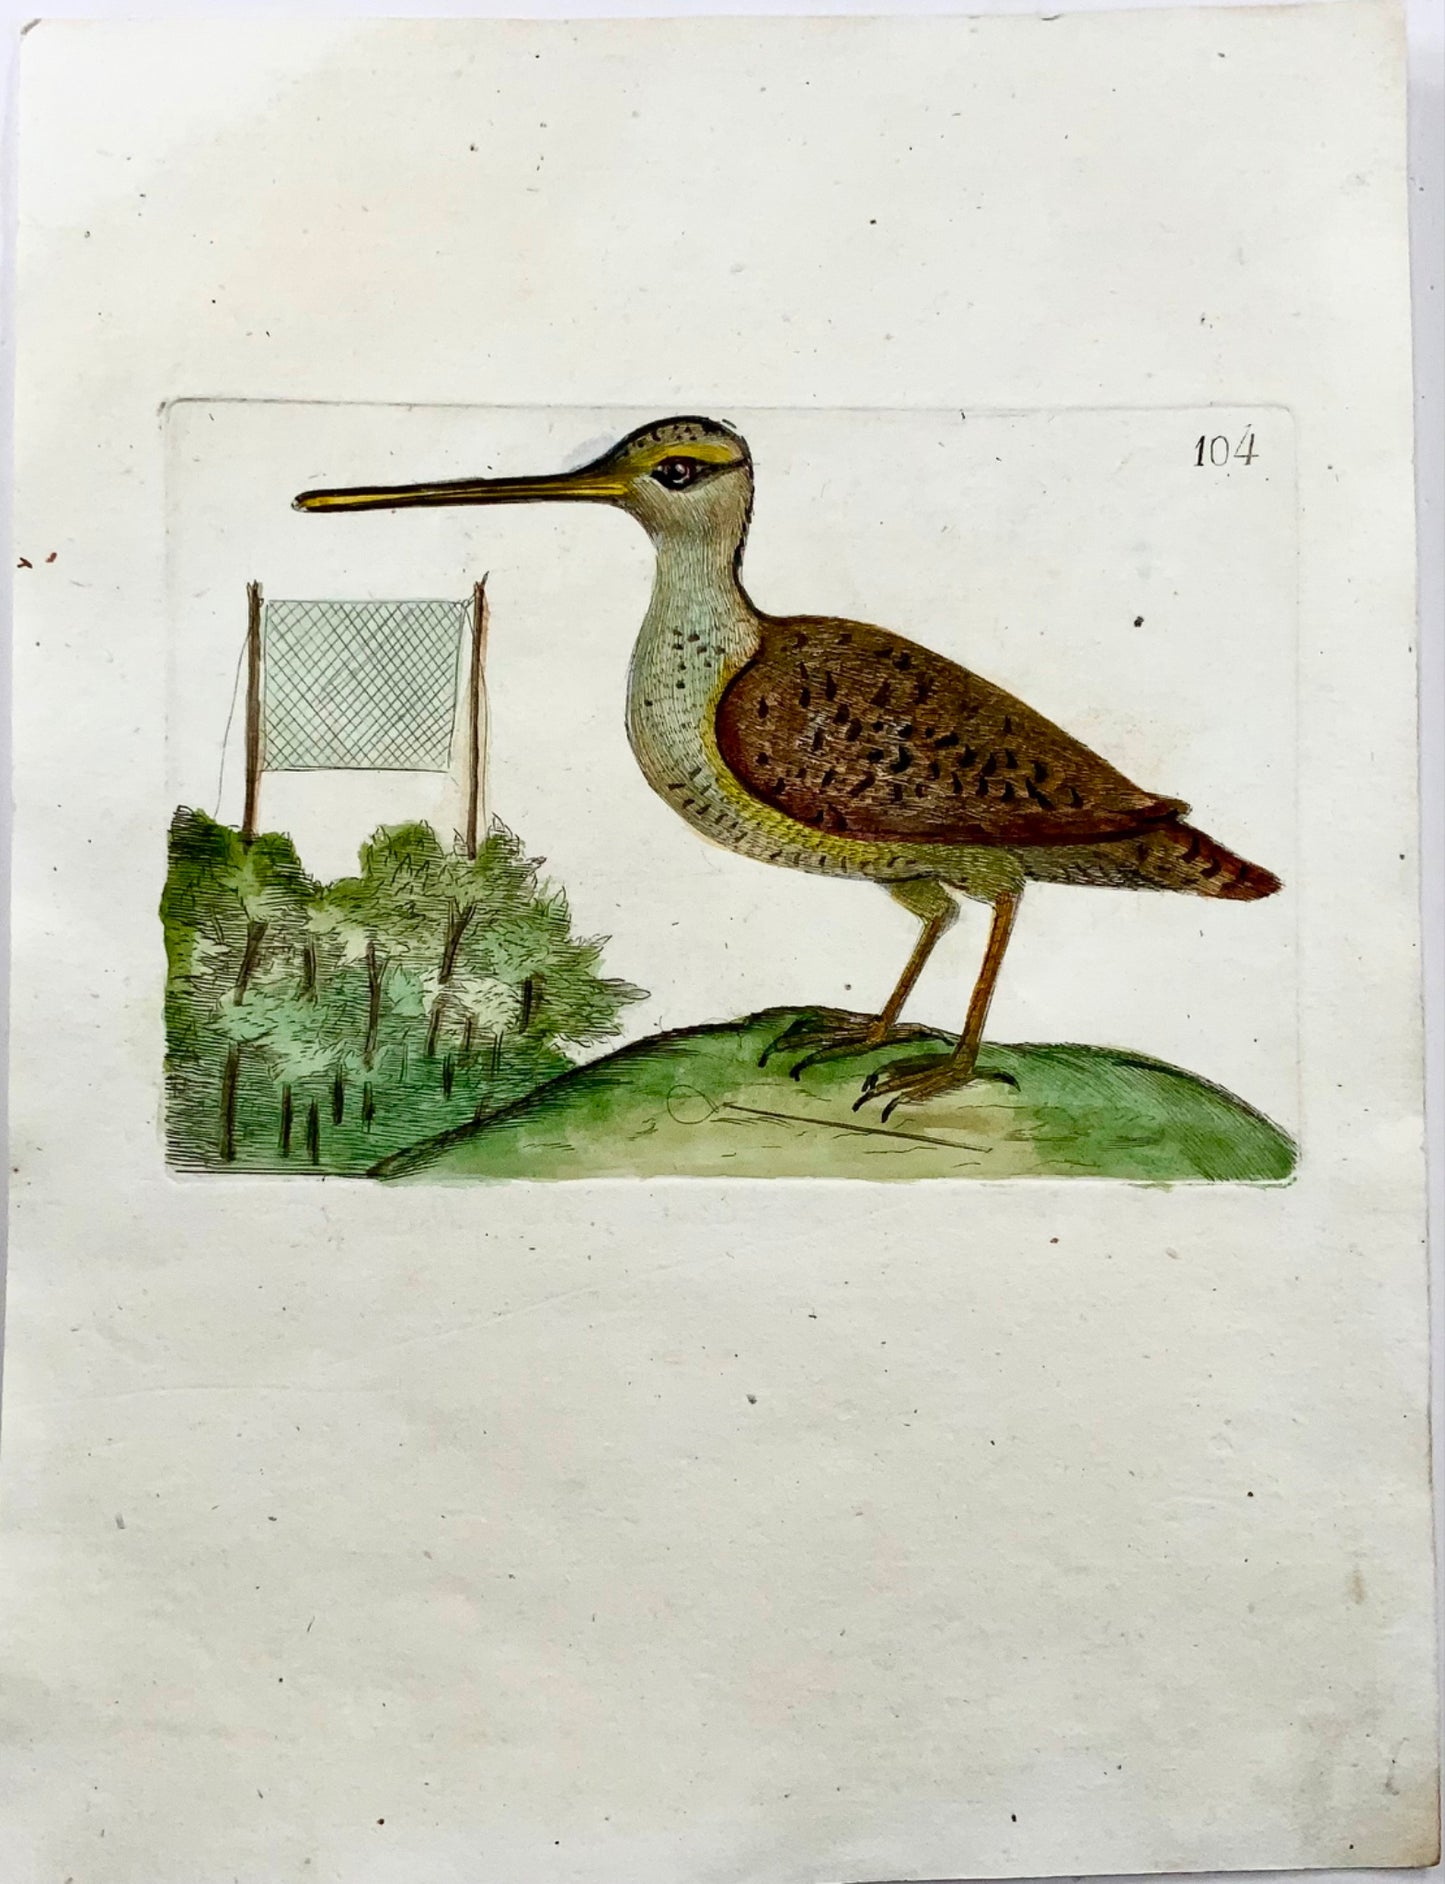 1794 Common Snipe, Rémy Willemet (1735-1790), quarto, engraving, rare, ornithology